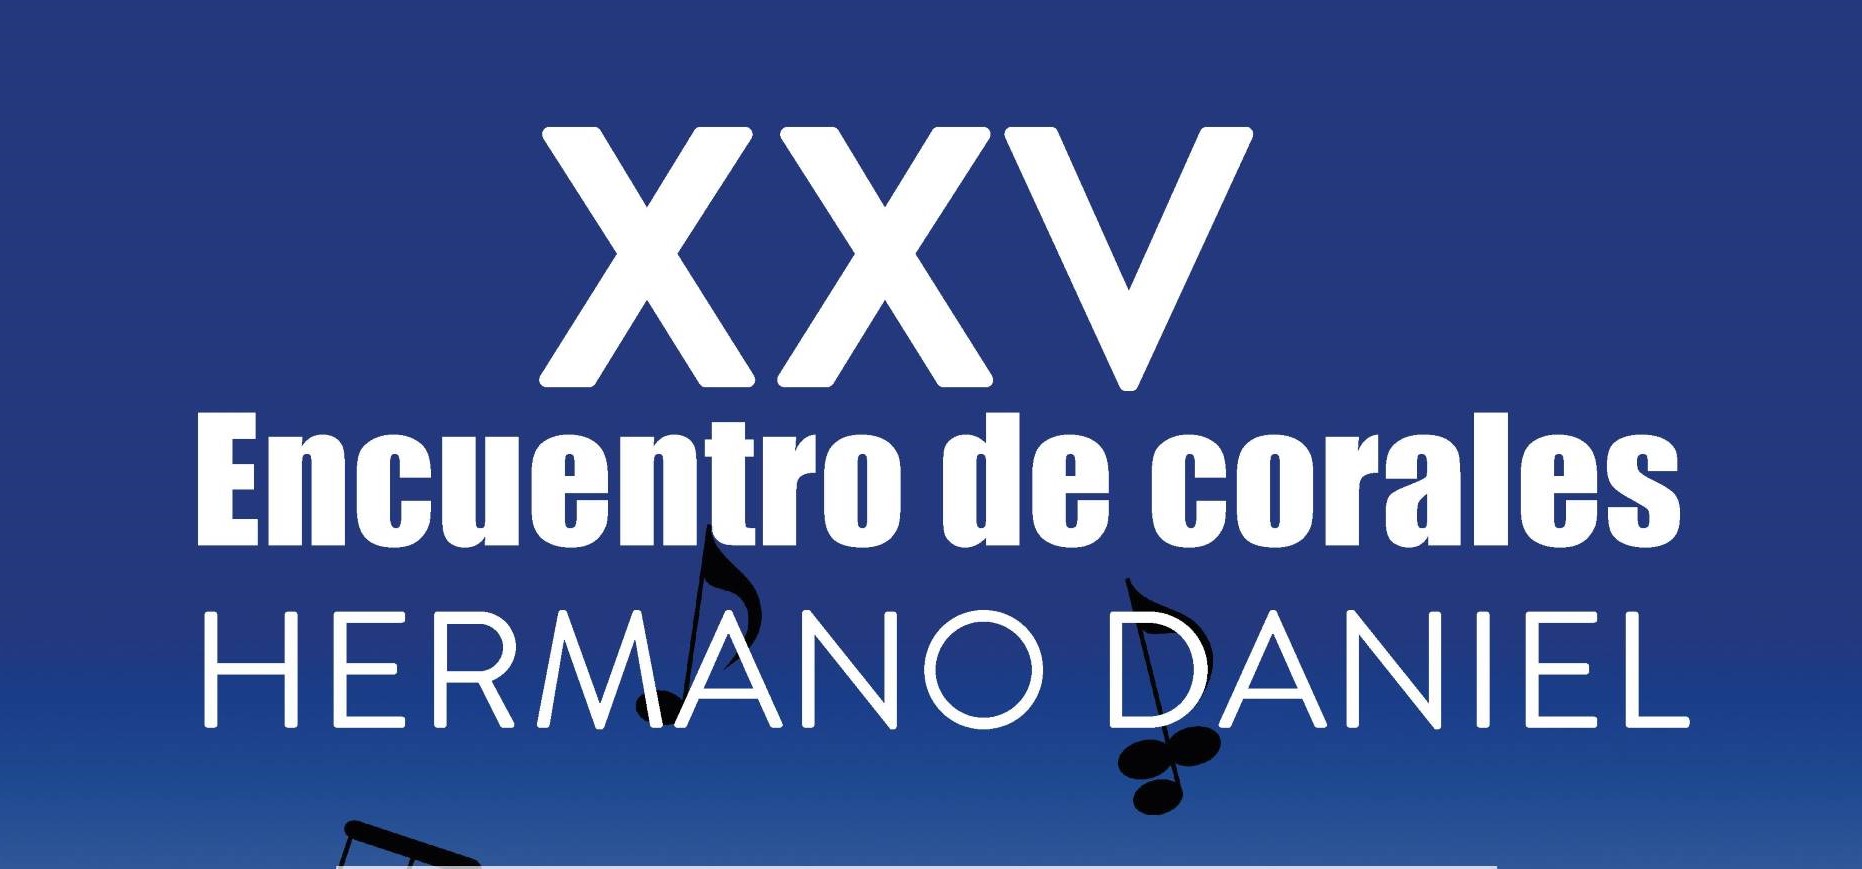 XXV ENCUENTRO DE CORALES "HERMANO DANIEL"